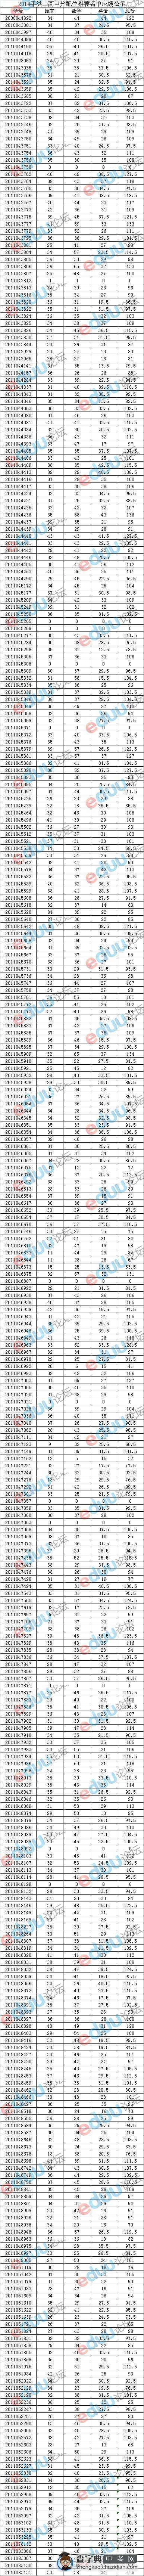 2014年洪山高中分配生名单公示结果（全部）1